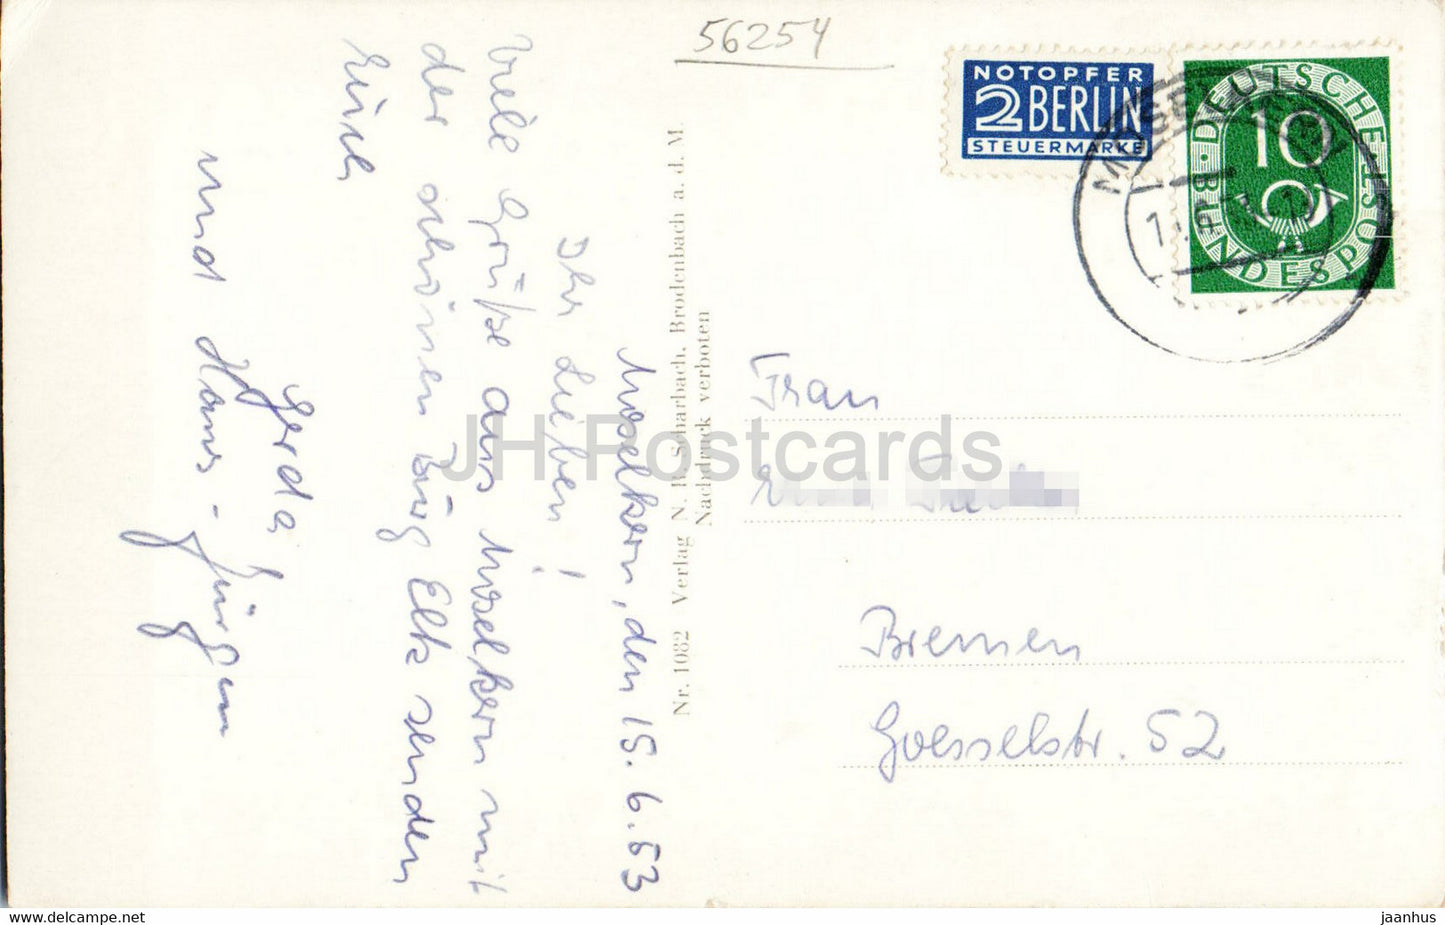 Burg Eltz - château - 1082 - carte postale ancienne - 1953 - Allemagne - utilisé